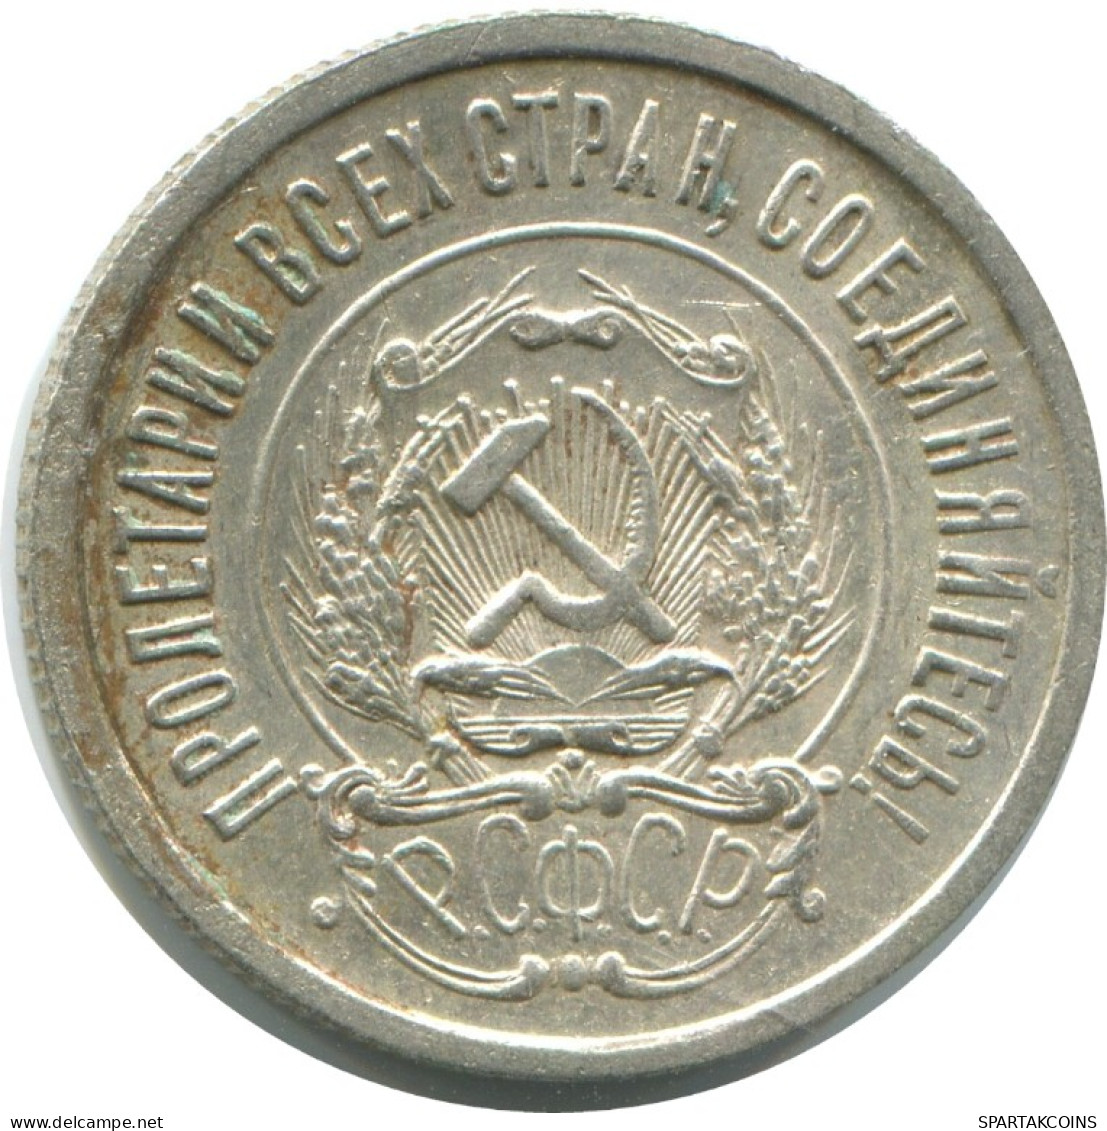 20 KOPEKS 1923 RUSSIA RSFSR SILVER Coin HIGH GRADE #AF577.4.U.A - Russland